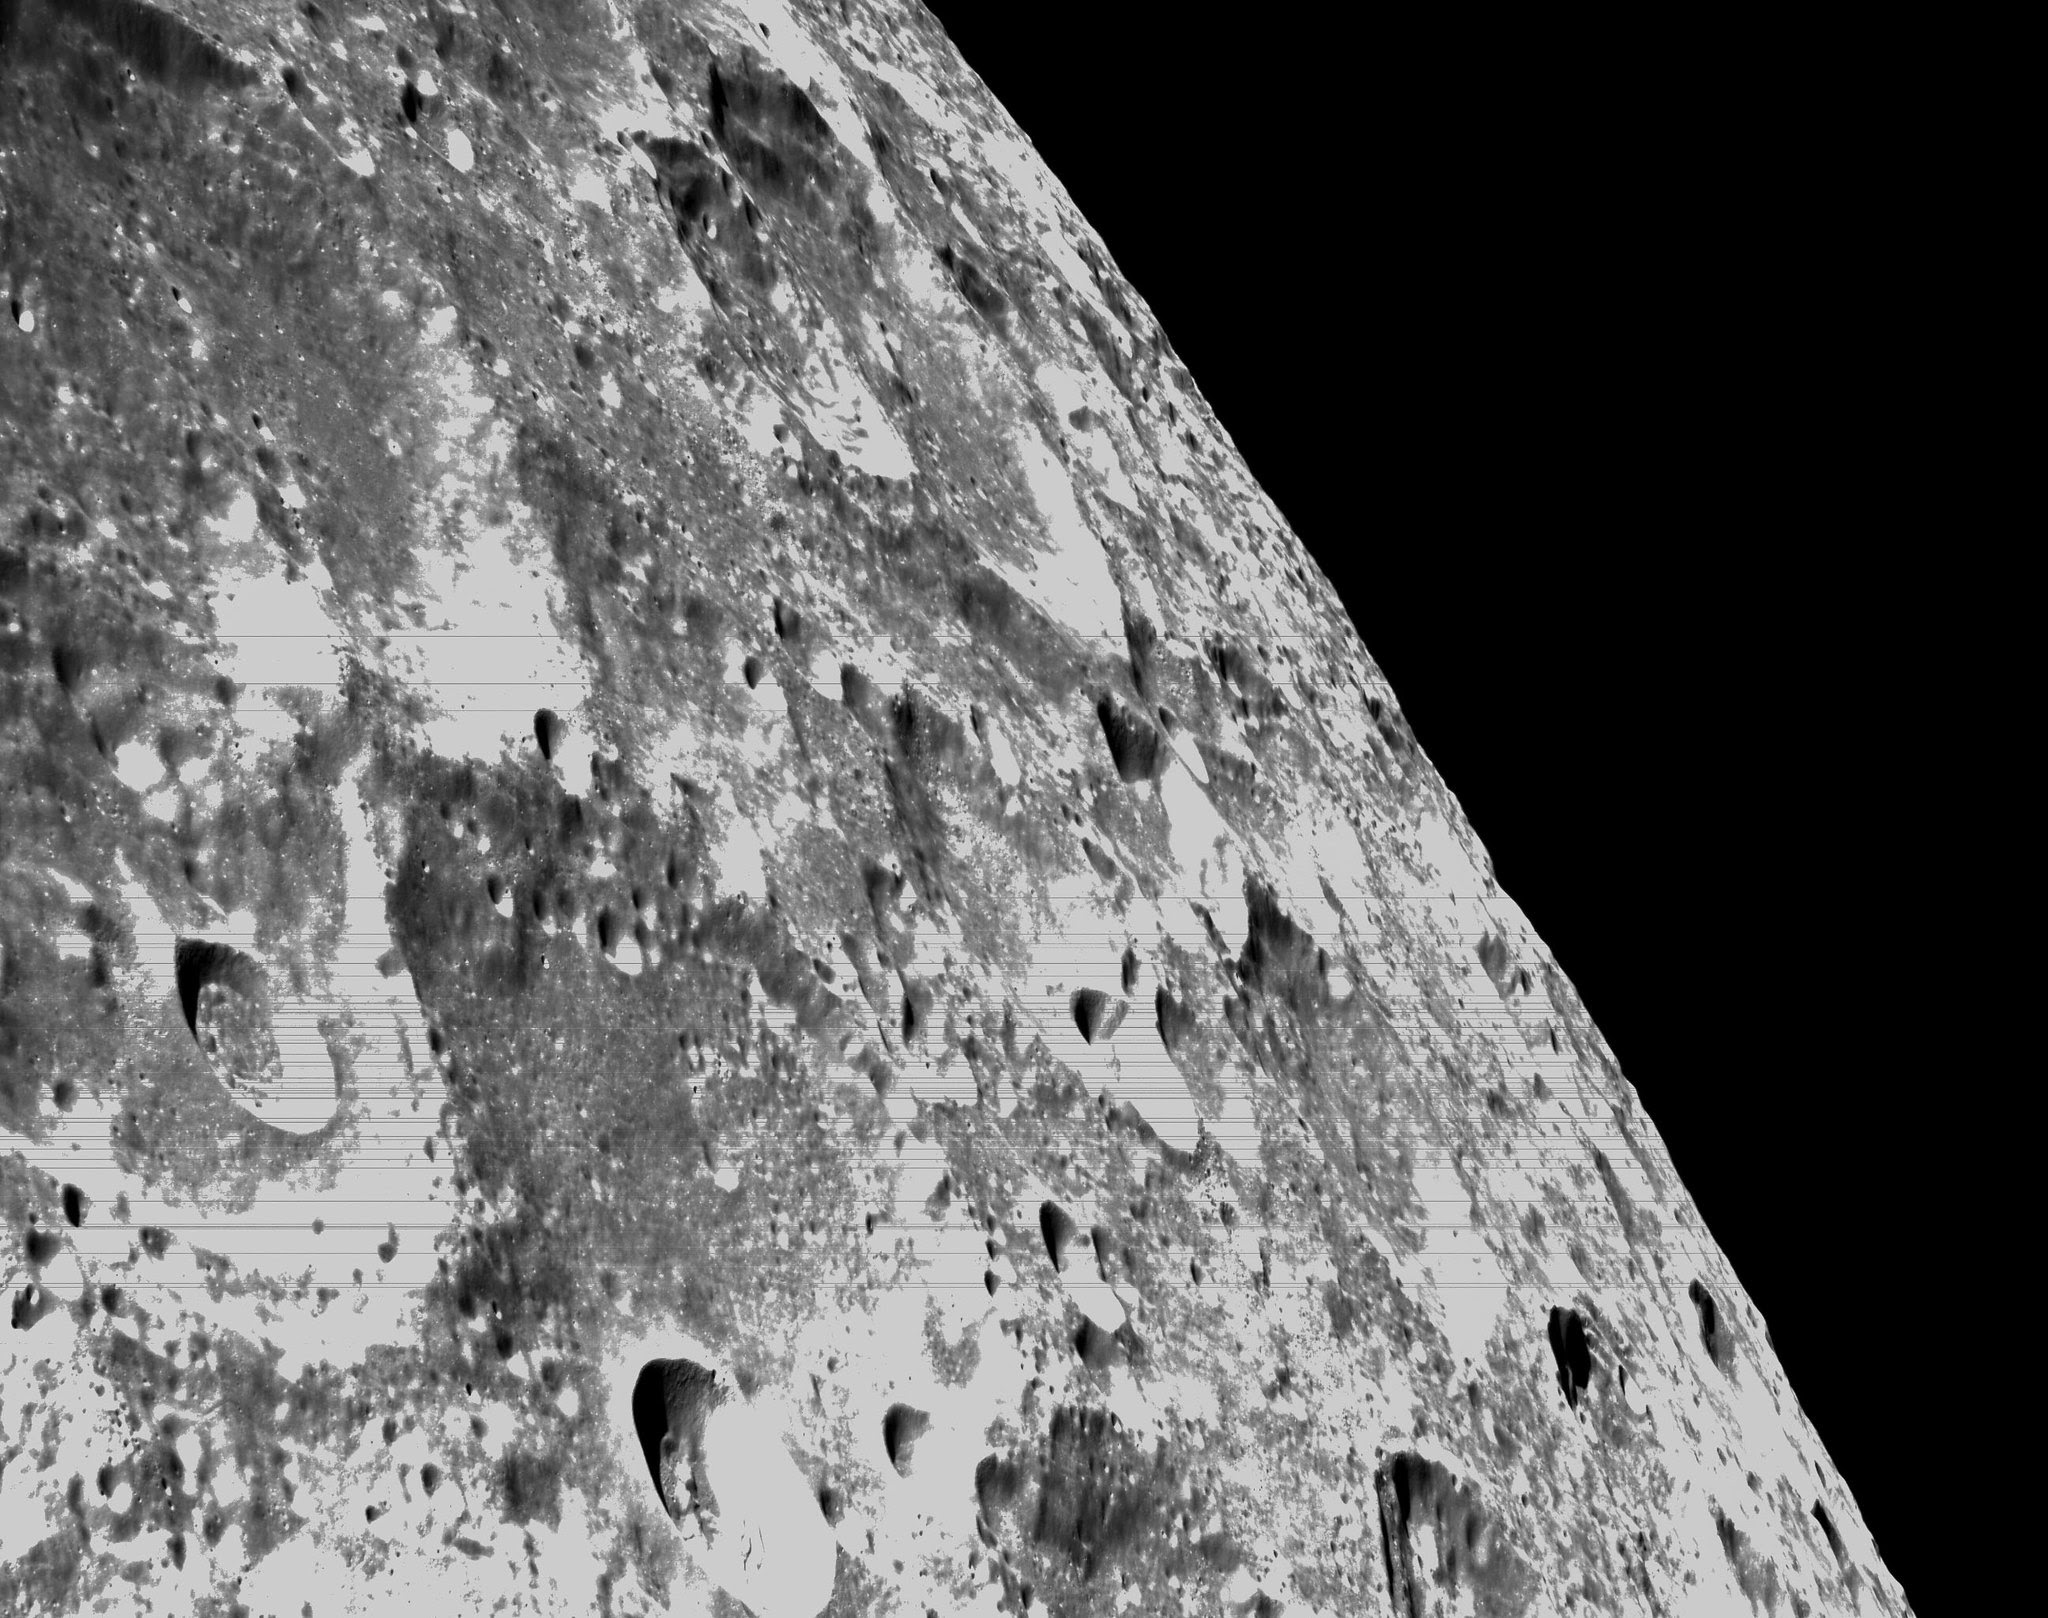 Watch Artemis 1's Orion spacecraft enter lunar orbit Friday